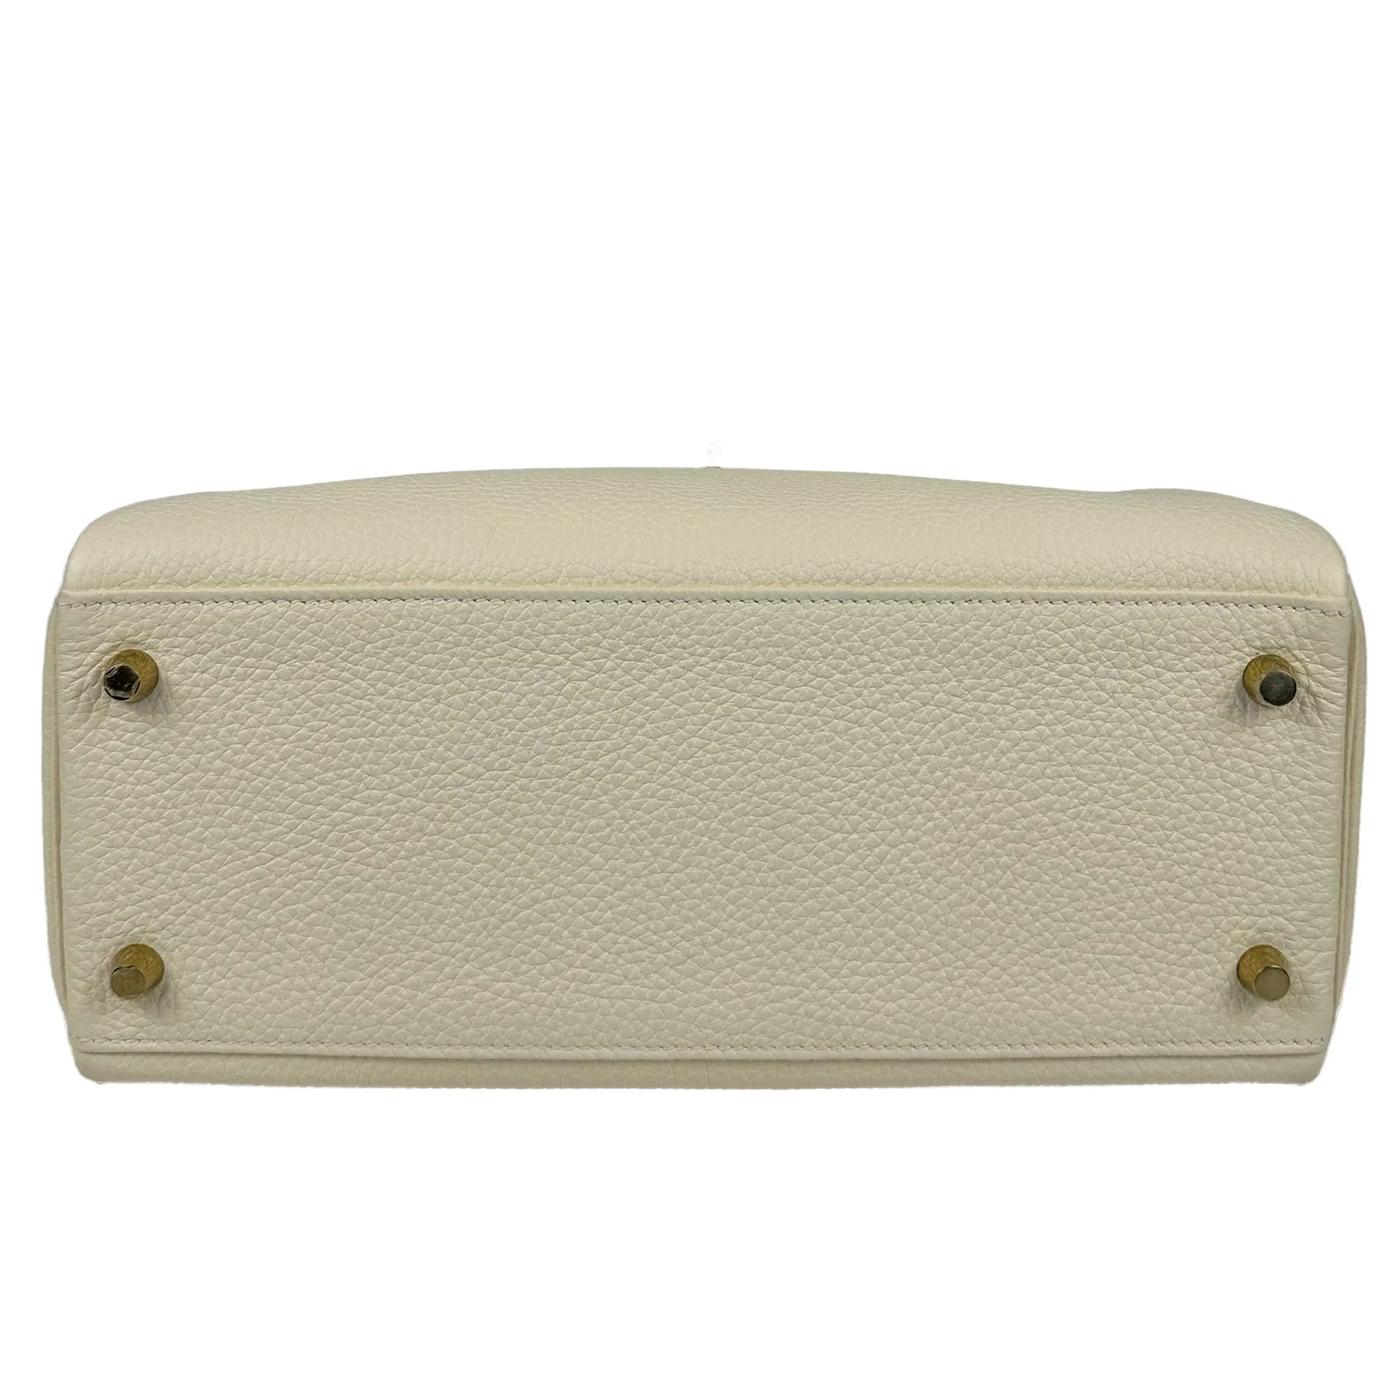 Women's Hermes Kelly 28 Nata Togo Leather Retourne Gold Hardware Bag For Sale